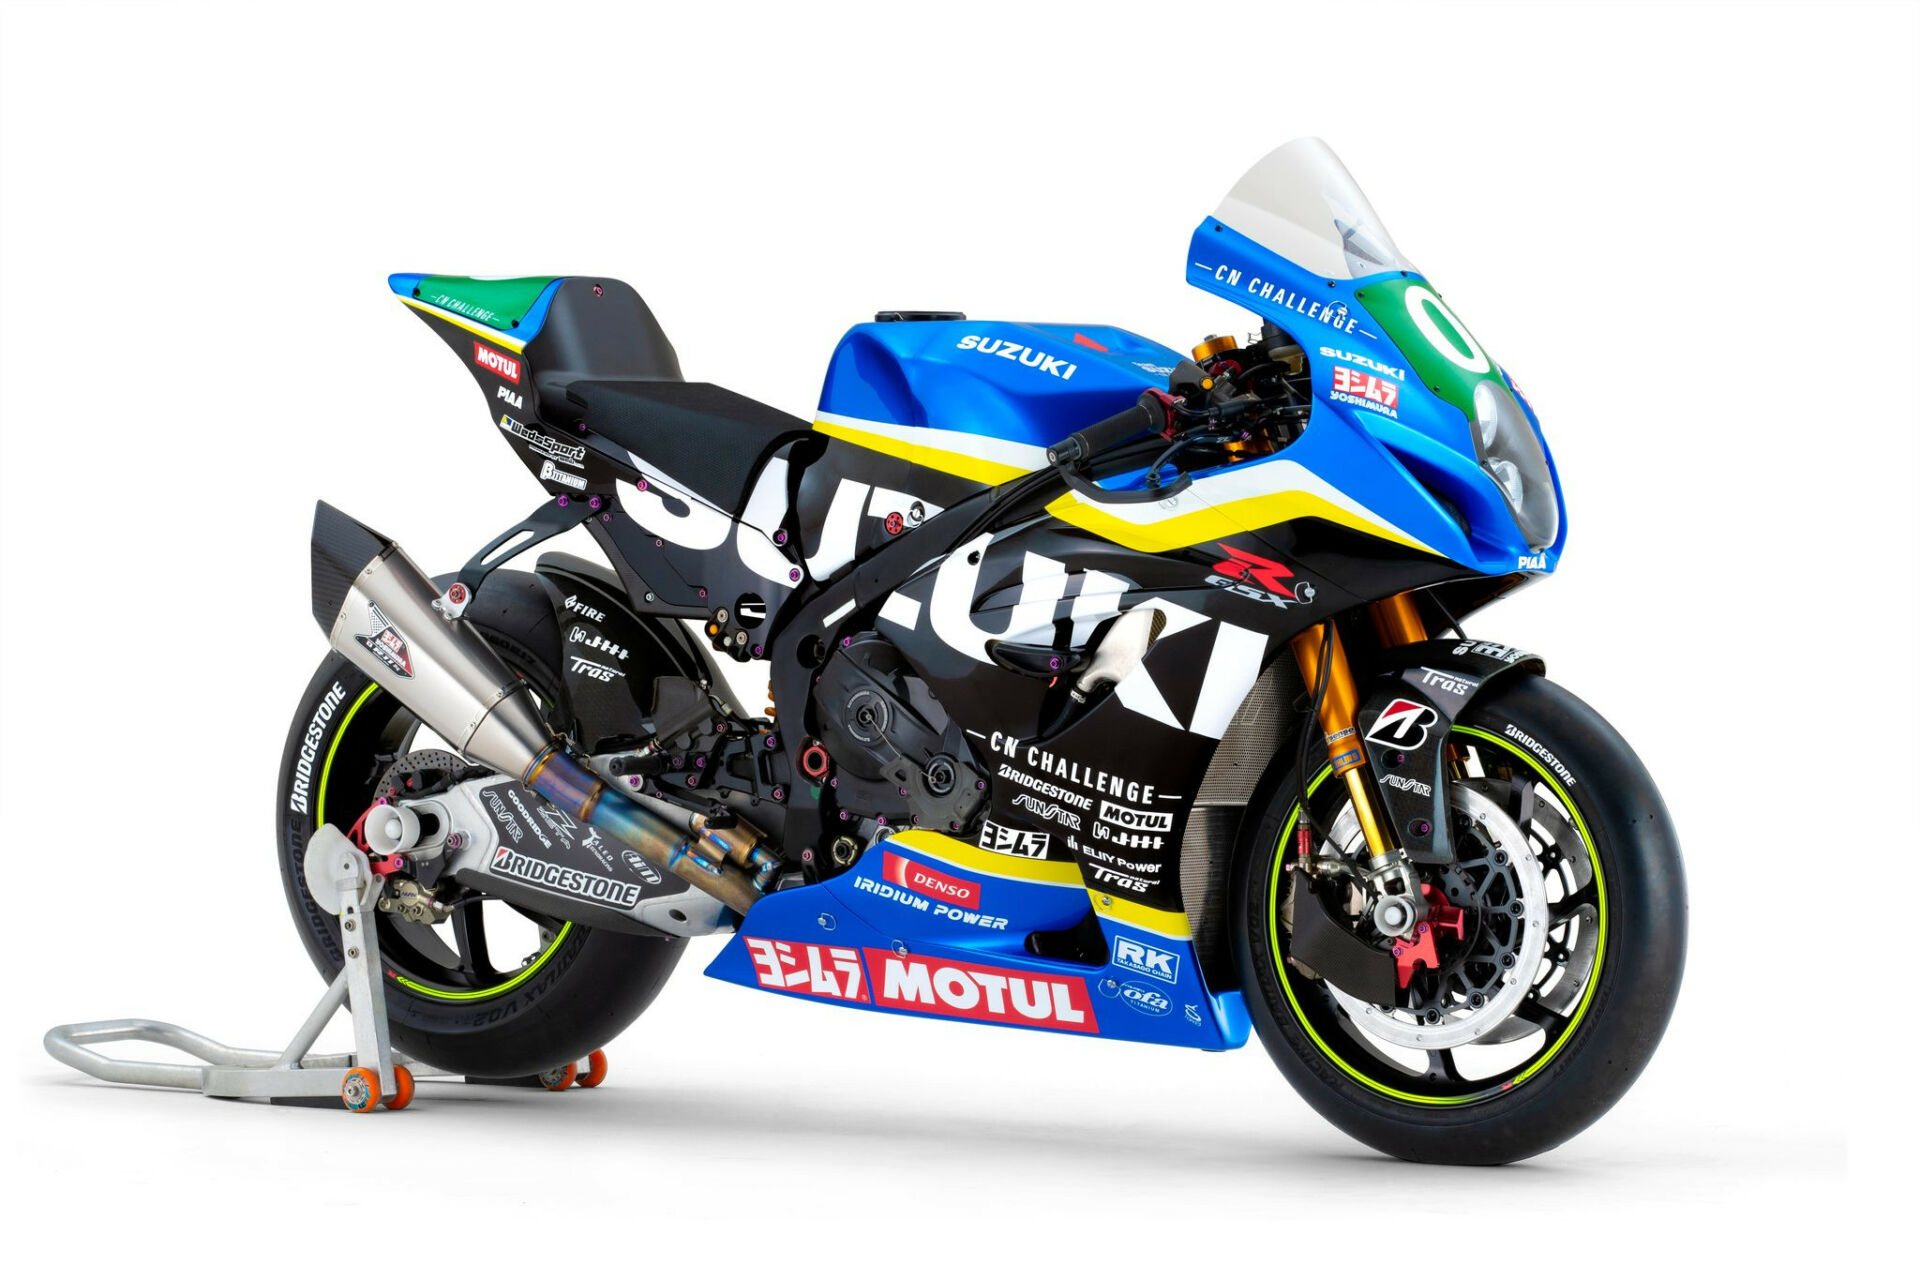 Team Suzuki CN Challenge's special GSX-R1000 endurance racebike. Photo courtesy Suzuki Motorcycles Australia.